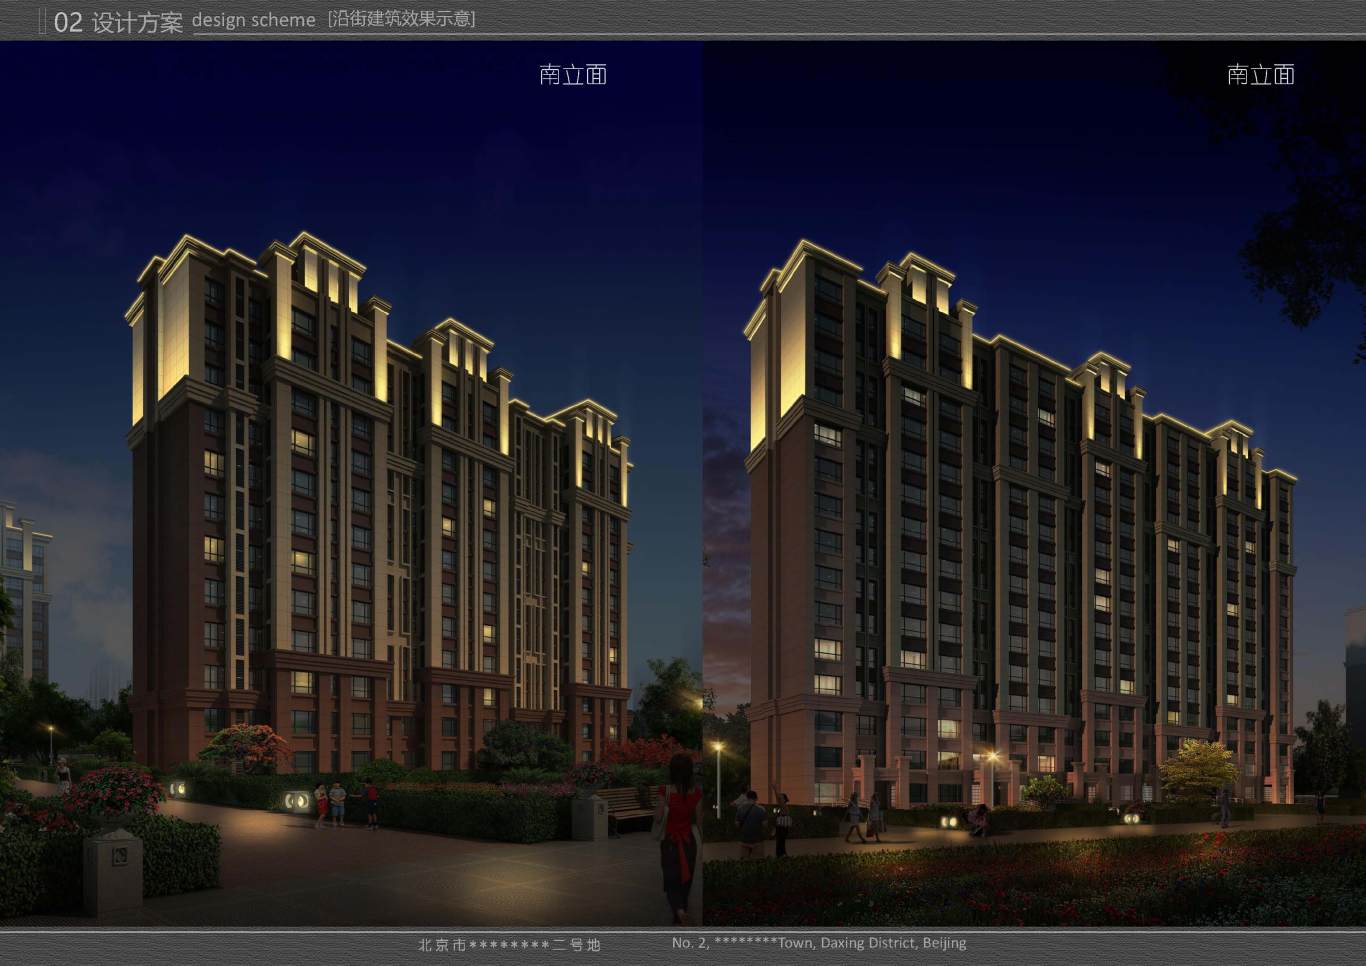 北京市大興區*****二號地夜景照明項目案例圖18